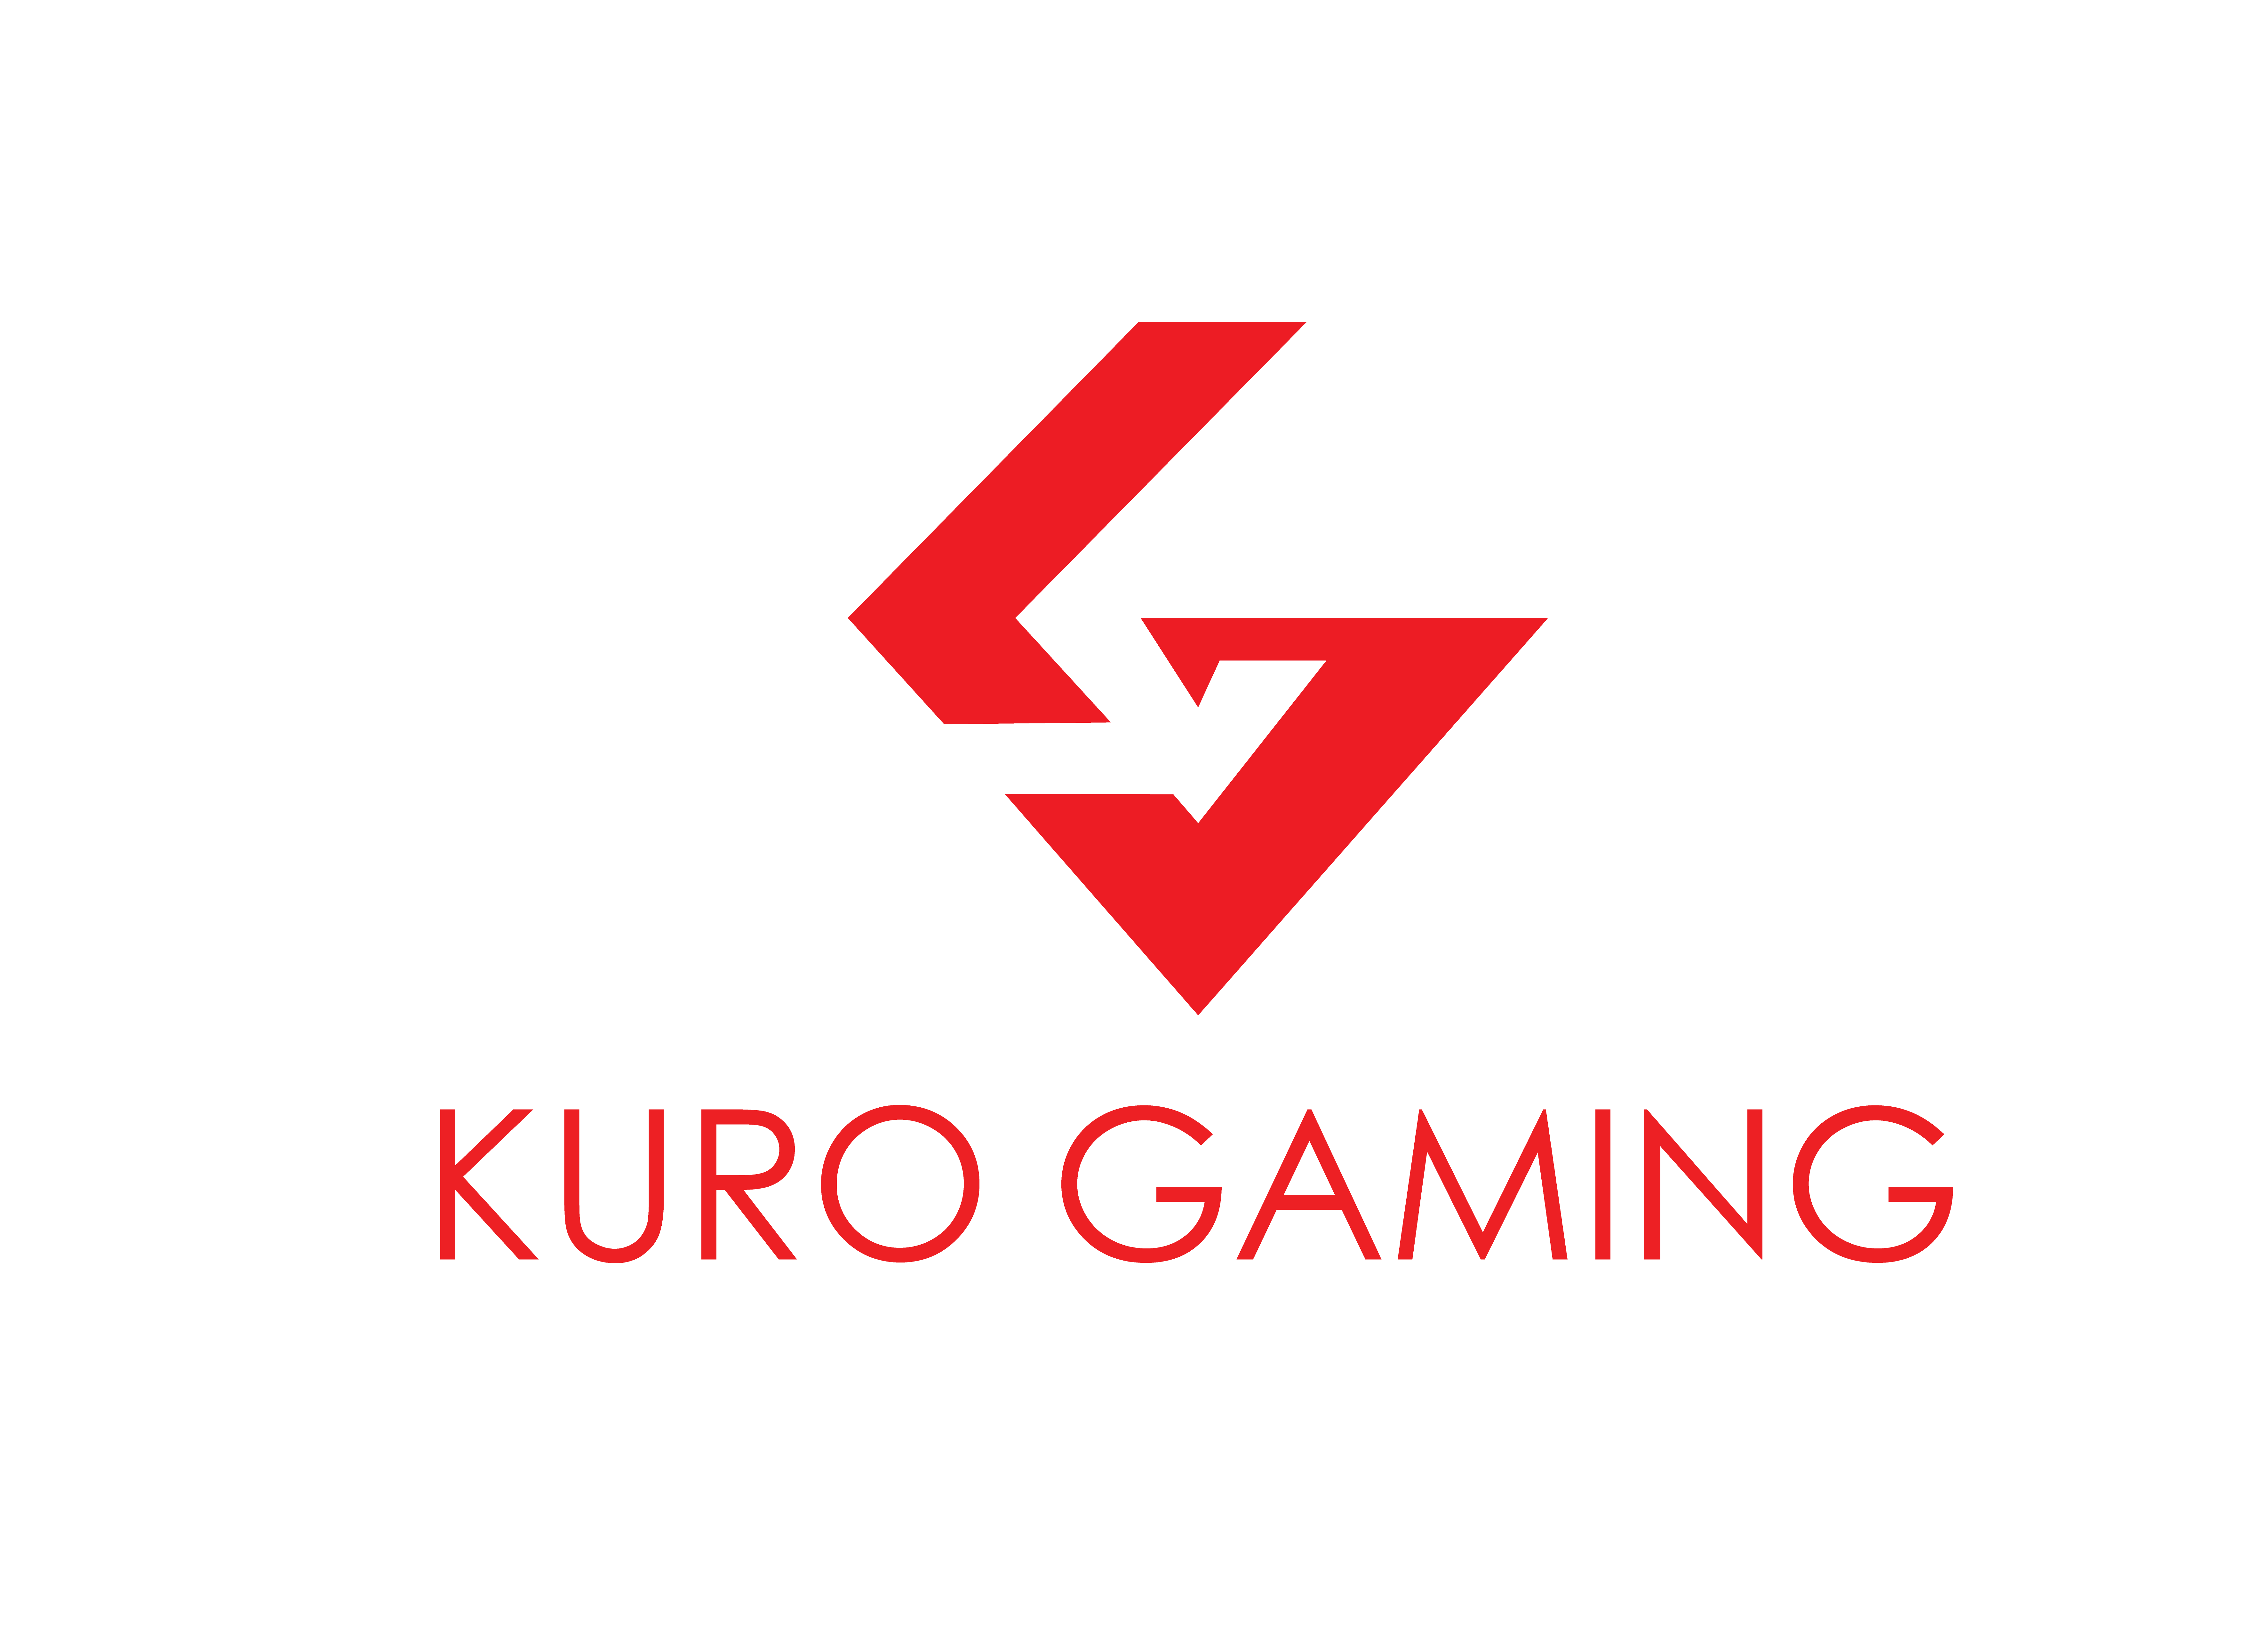 Kuro Gaming